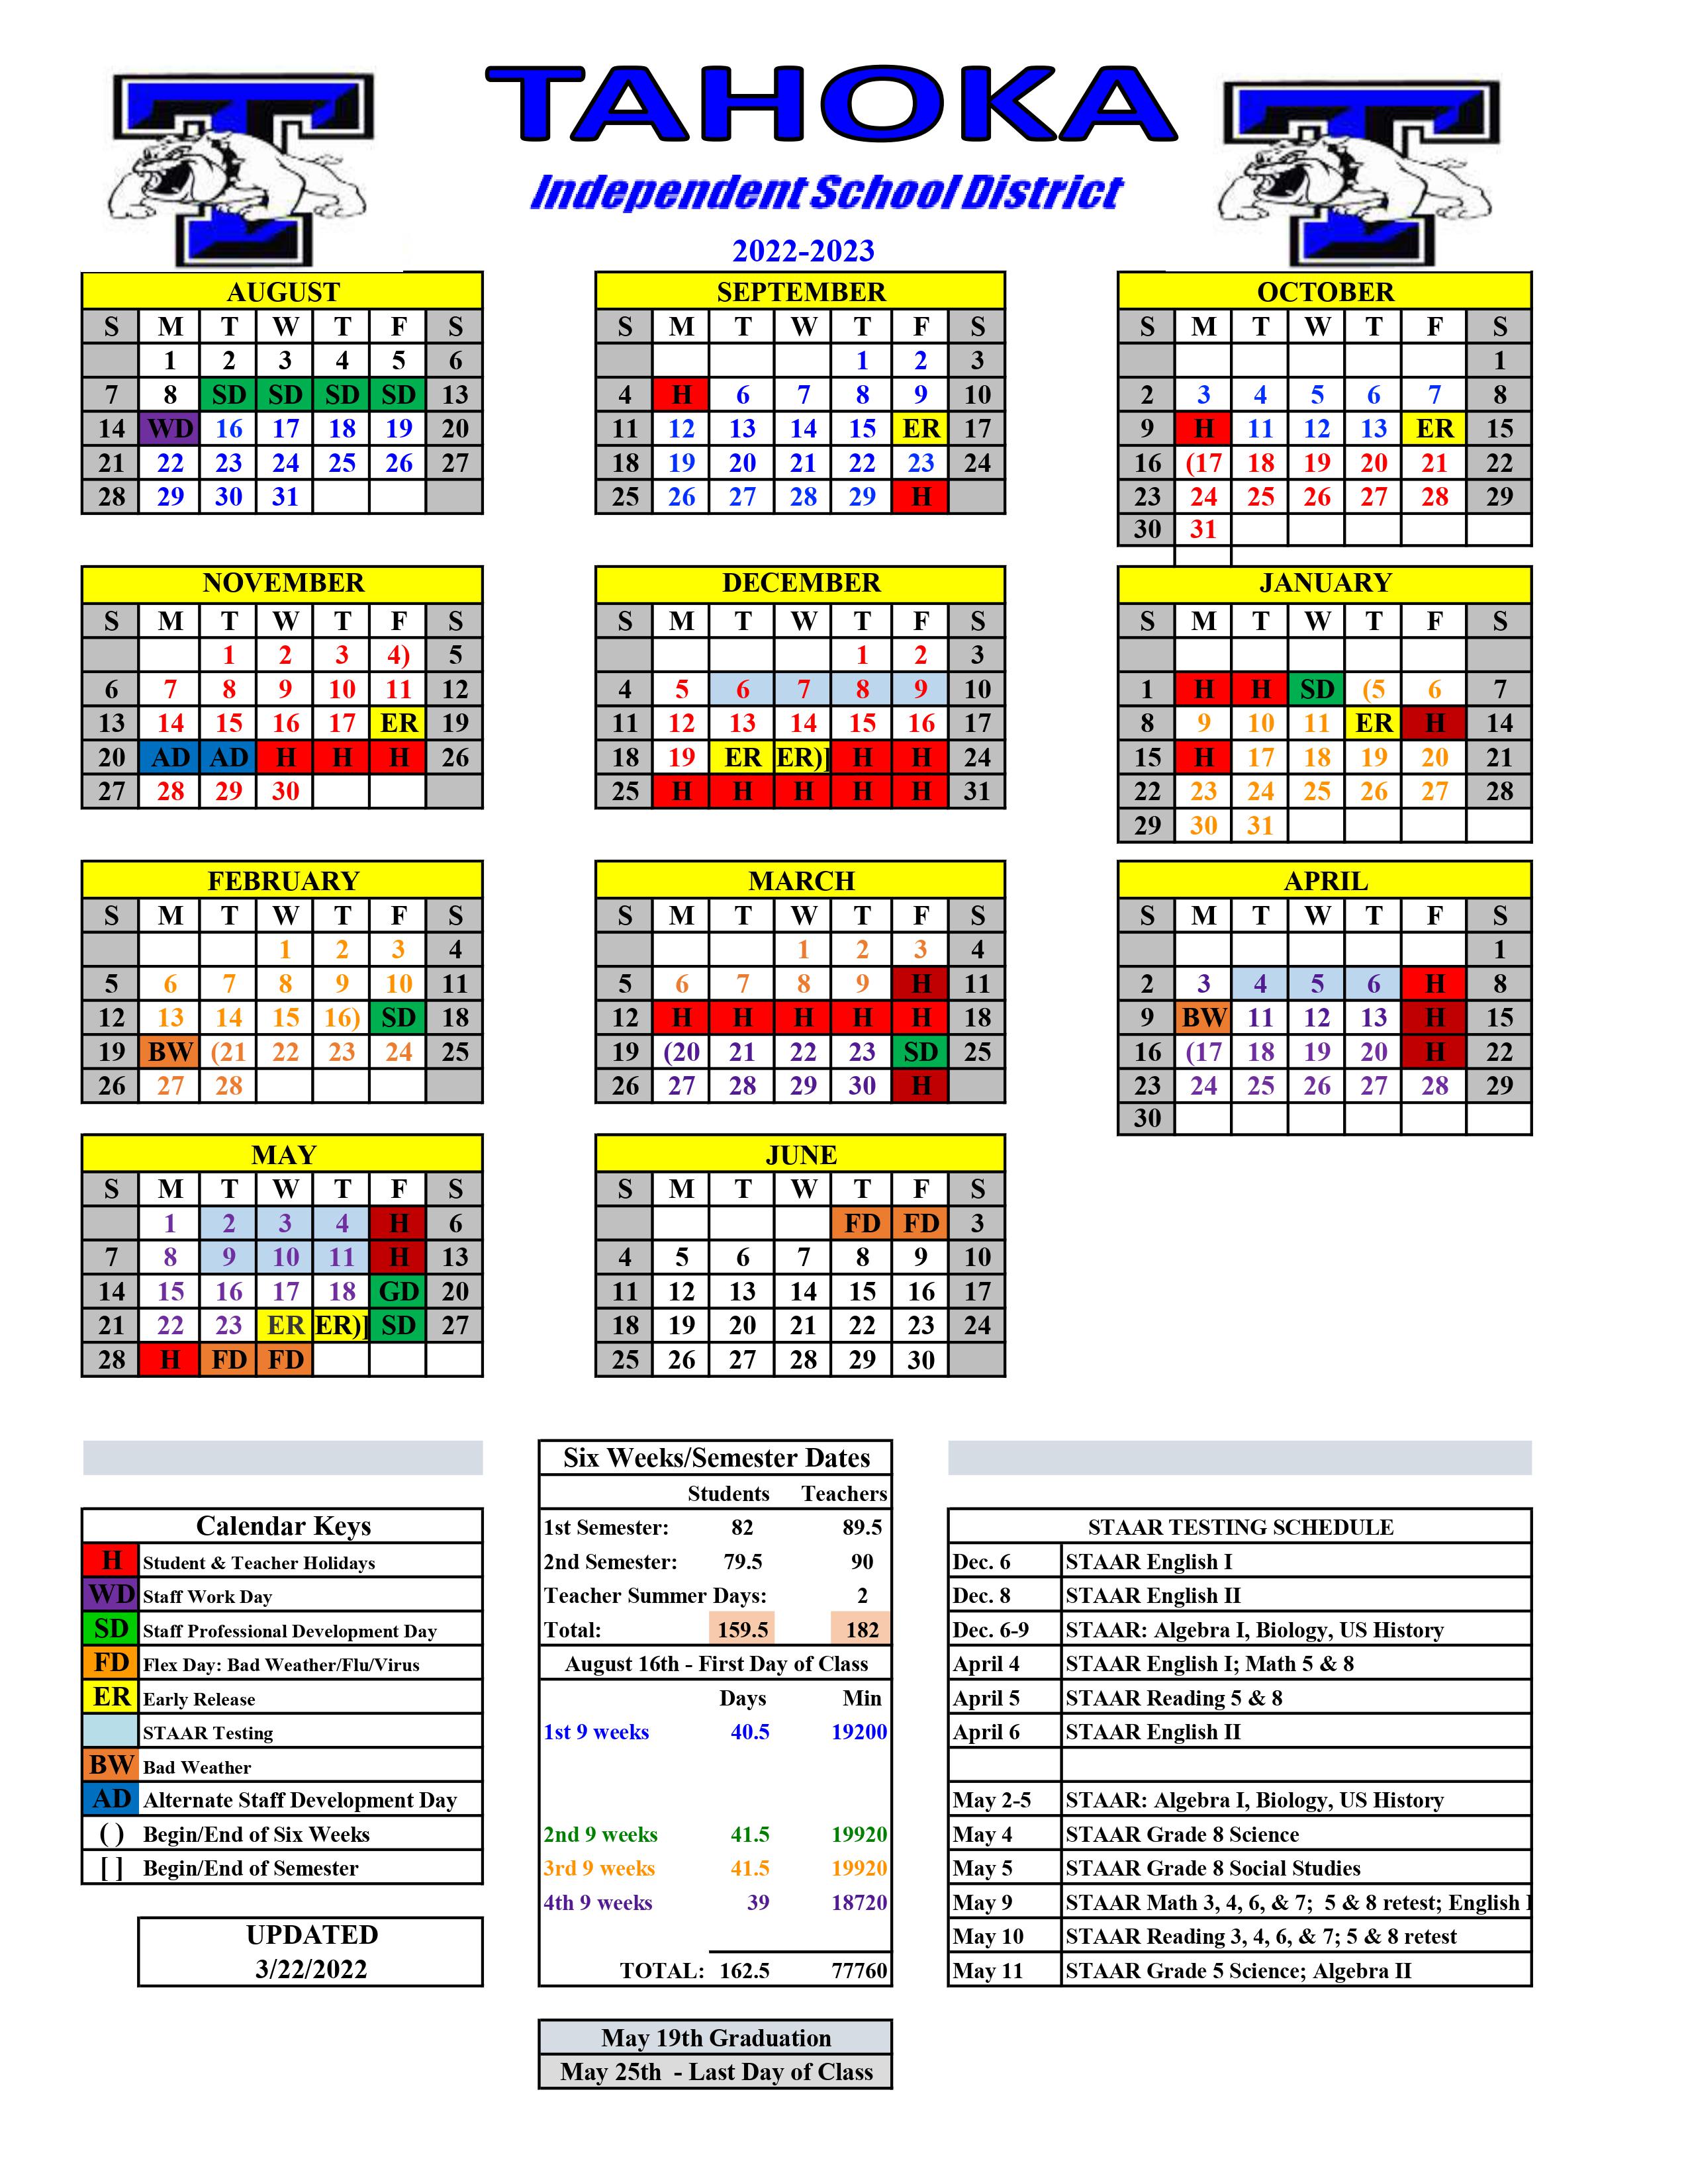 TISD District Calendar 22-23